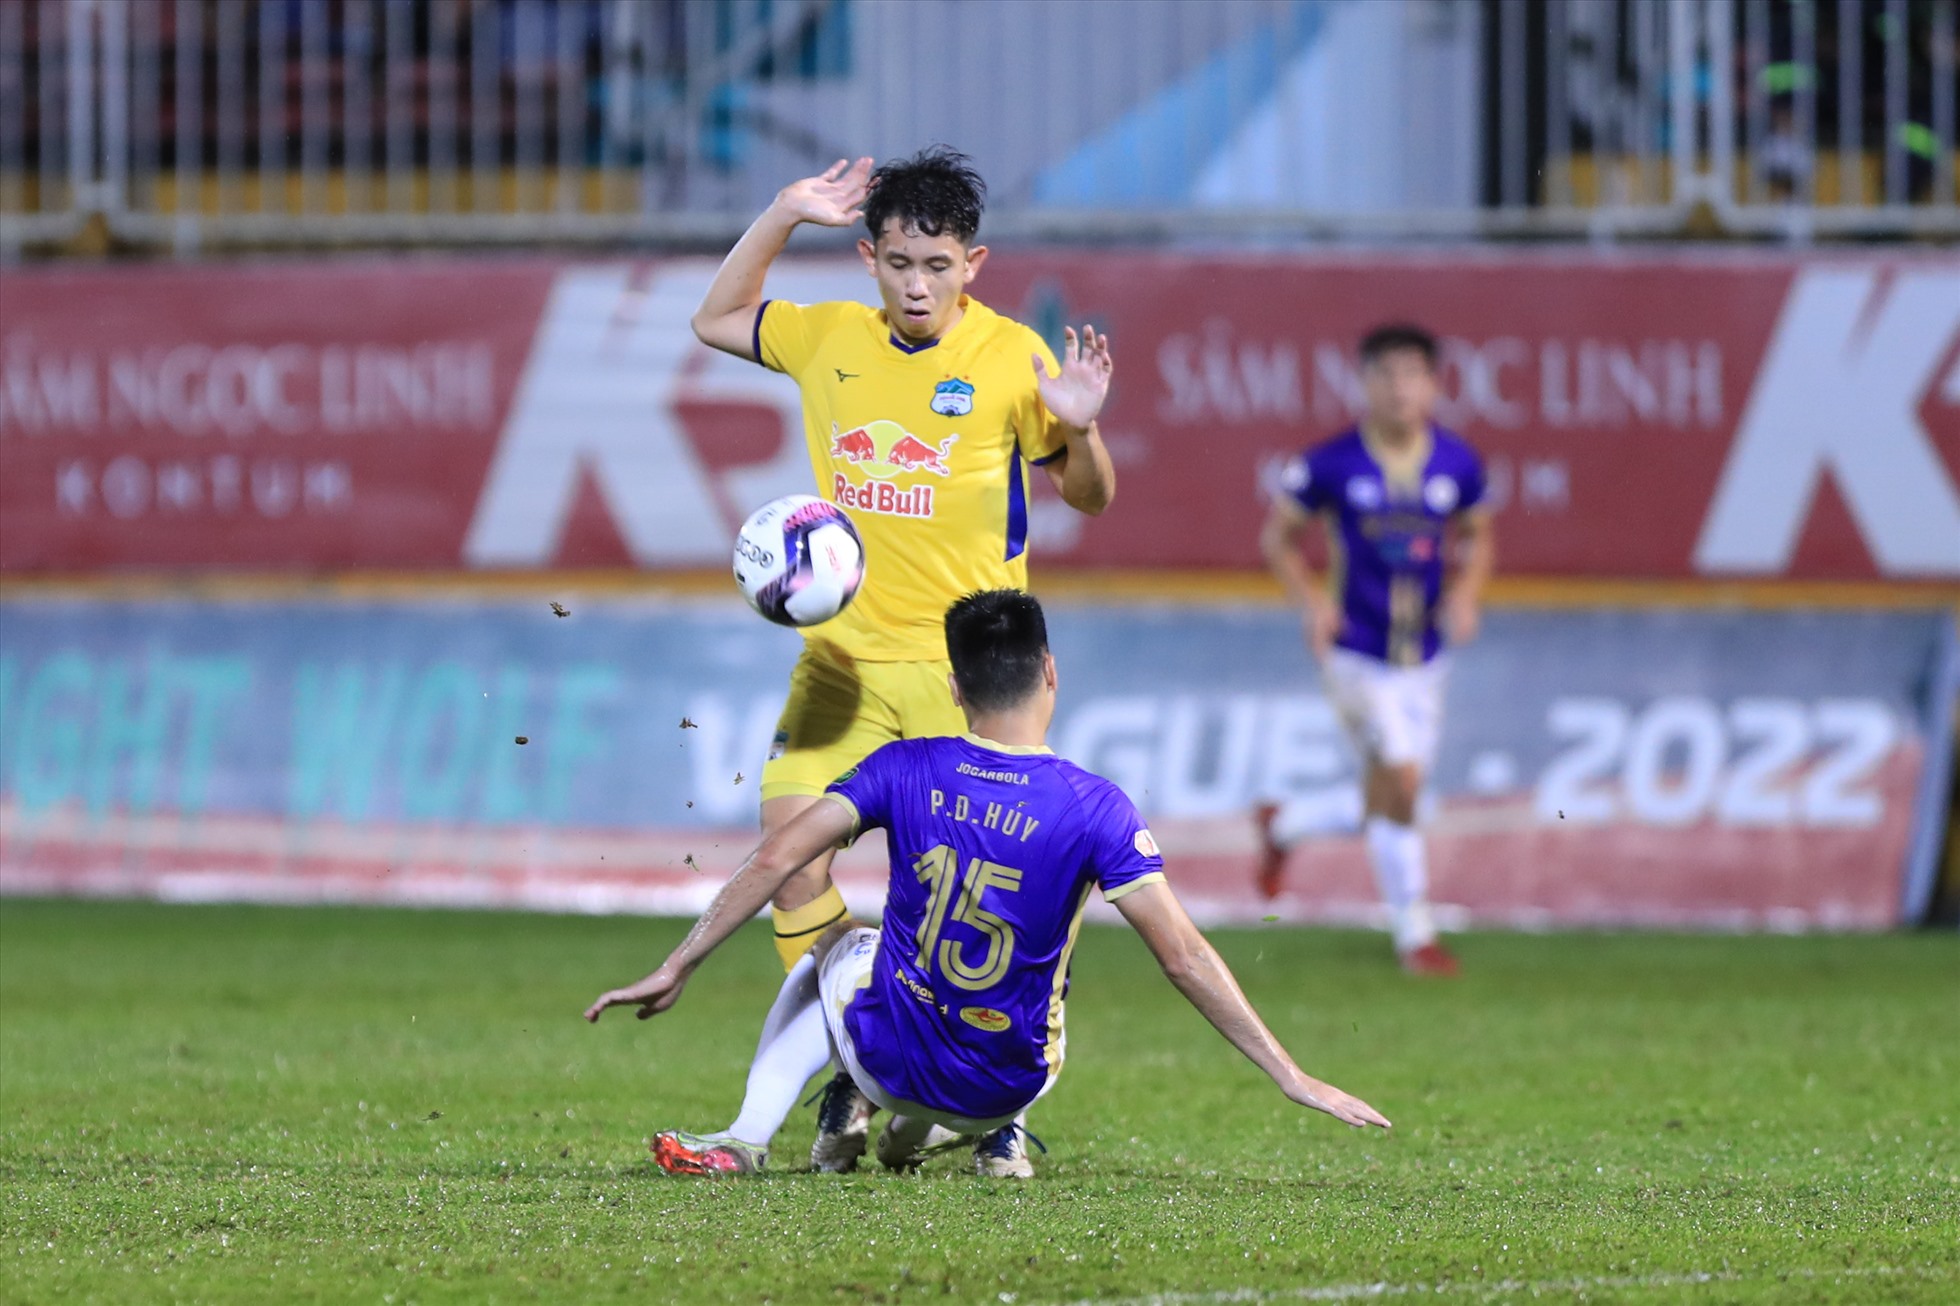 Chung cuộc, câu lạc bộ Hoàng Anh Gia Lai và Hà Nội hoà nhau với tỉ số 1-1 ở trận đấu cuối cùng Night Wolf V.League 2022. Đội bóng phố Núi cán đích ở vị trí thứ 6, còn Hà Nội đã vô địch trước đó 1 vòng đấu.